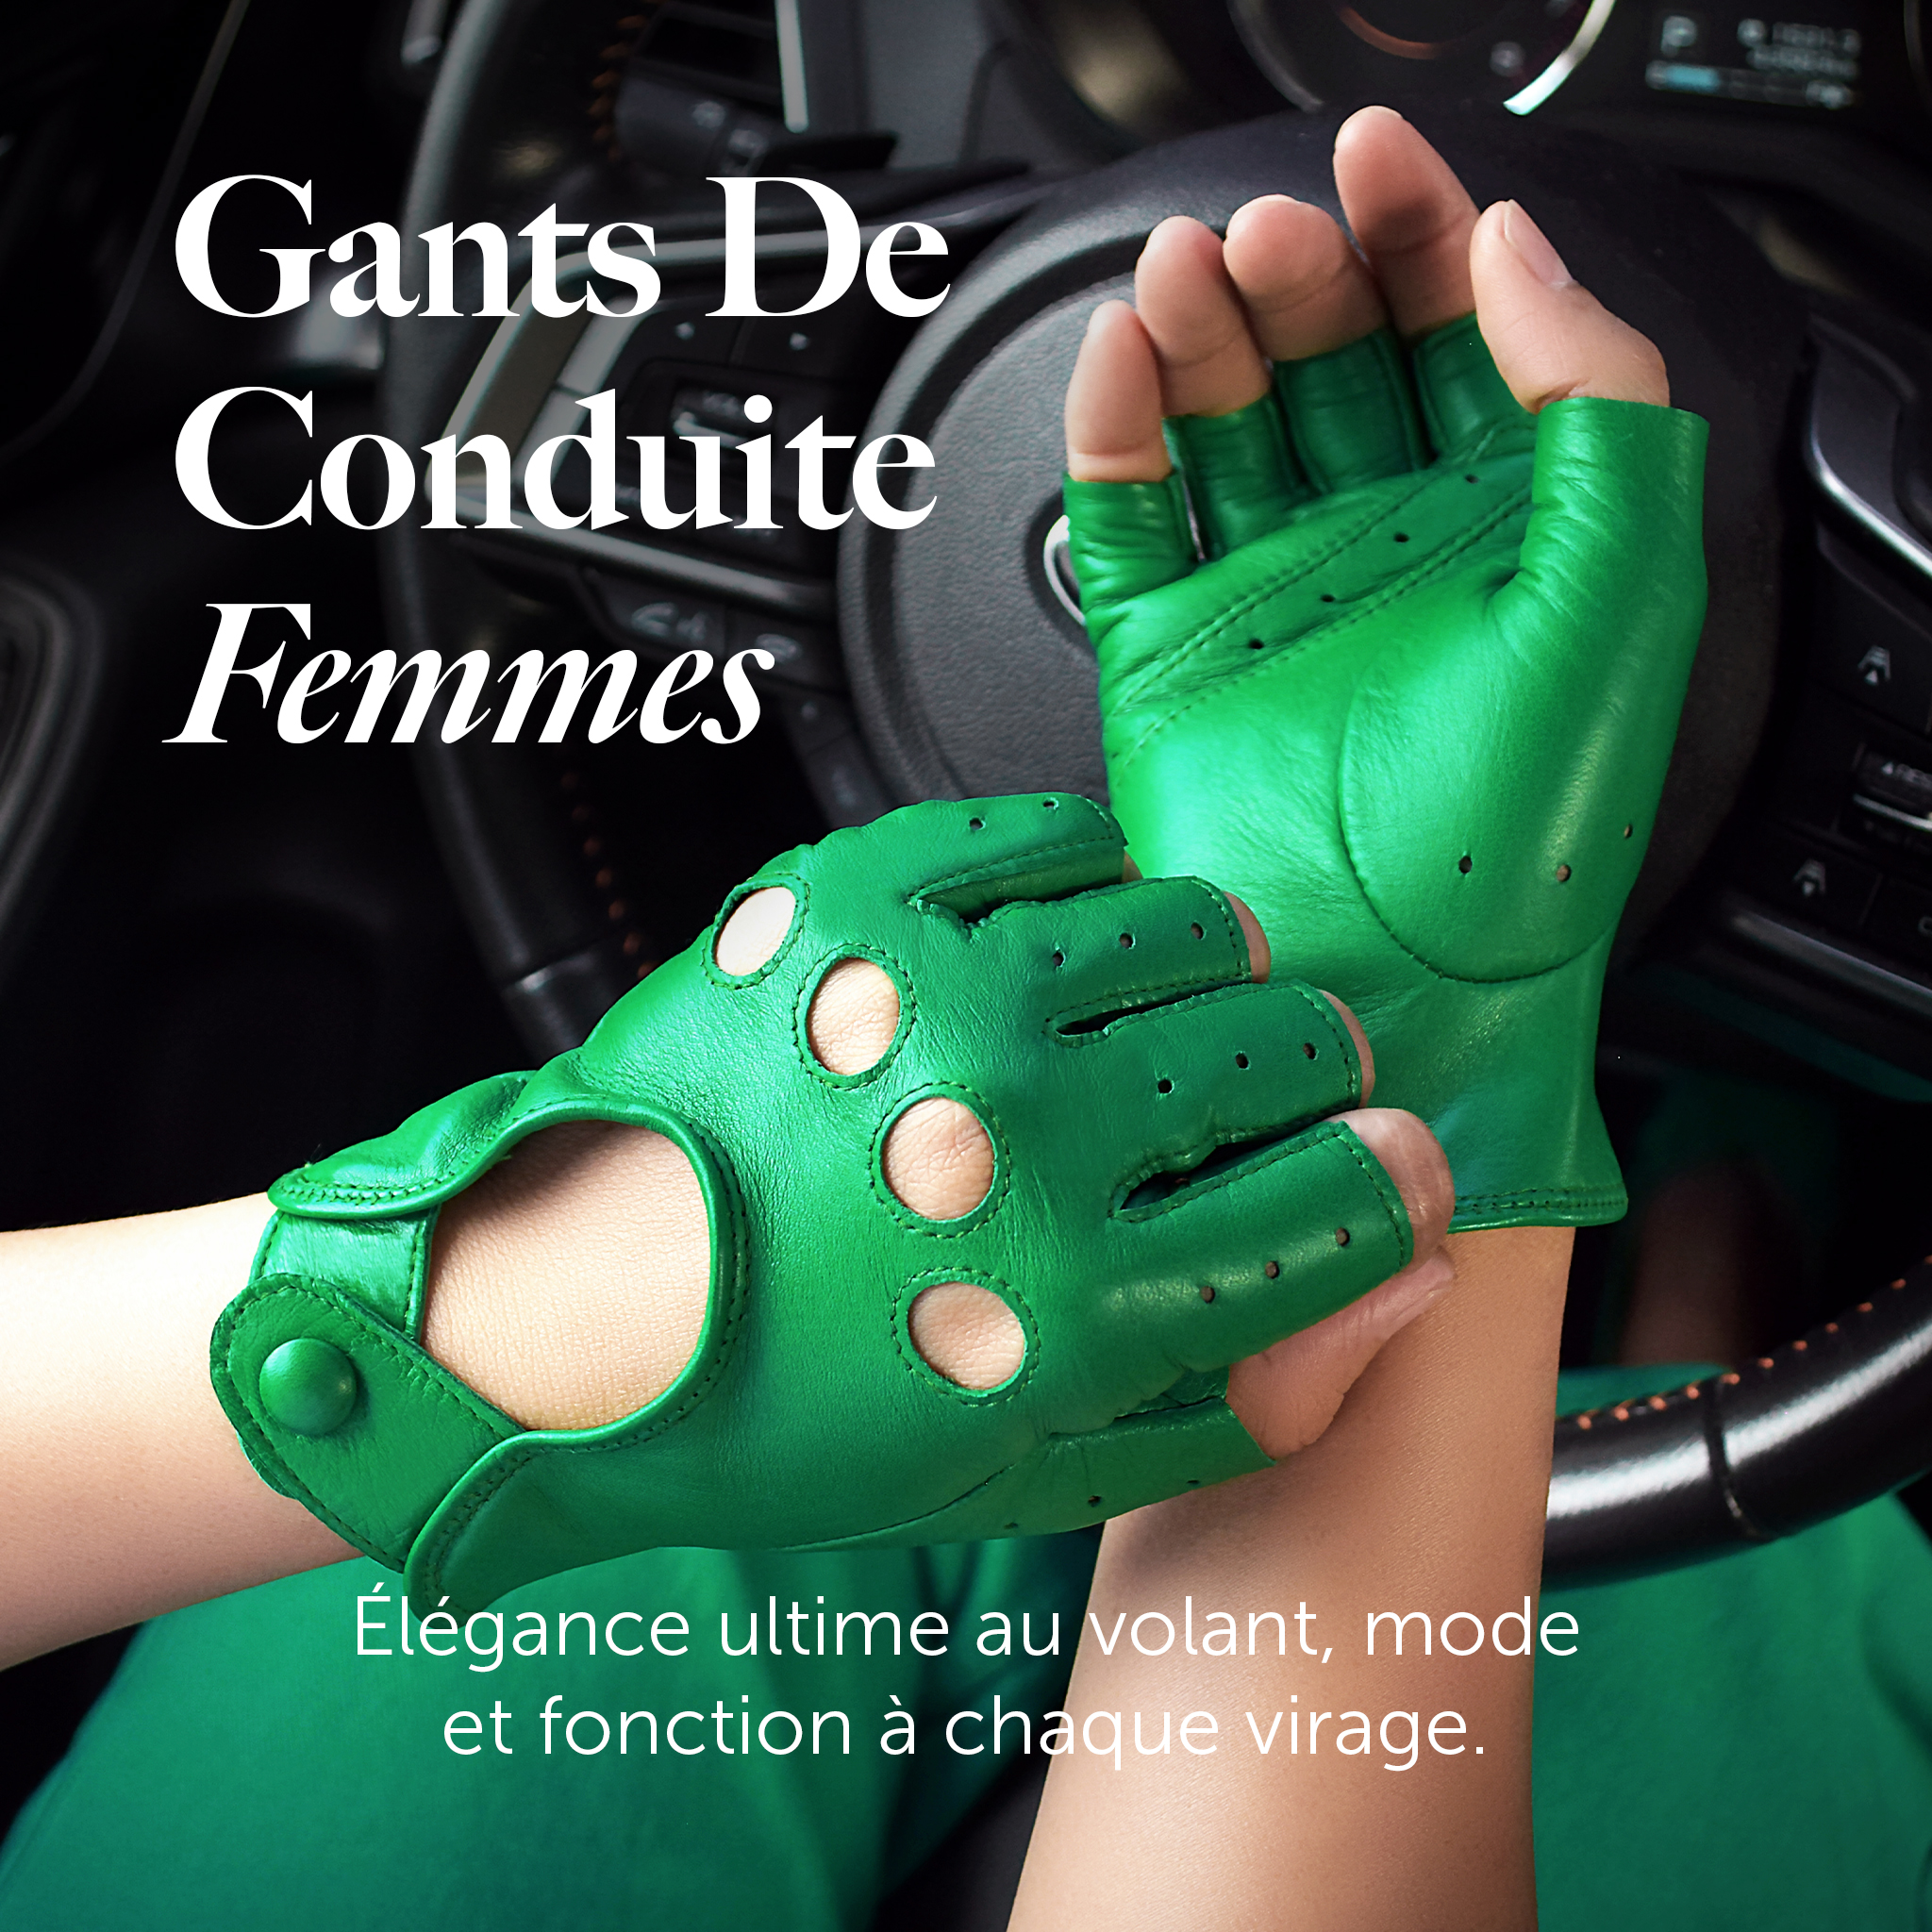 Gants De Conduite Pour Femme Élégance ultime au volant, mode et fonction à chaque virage.